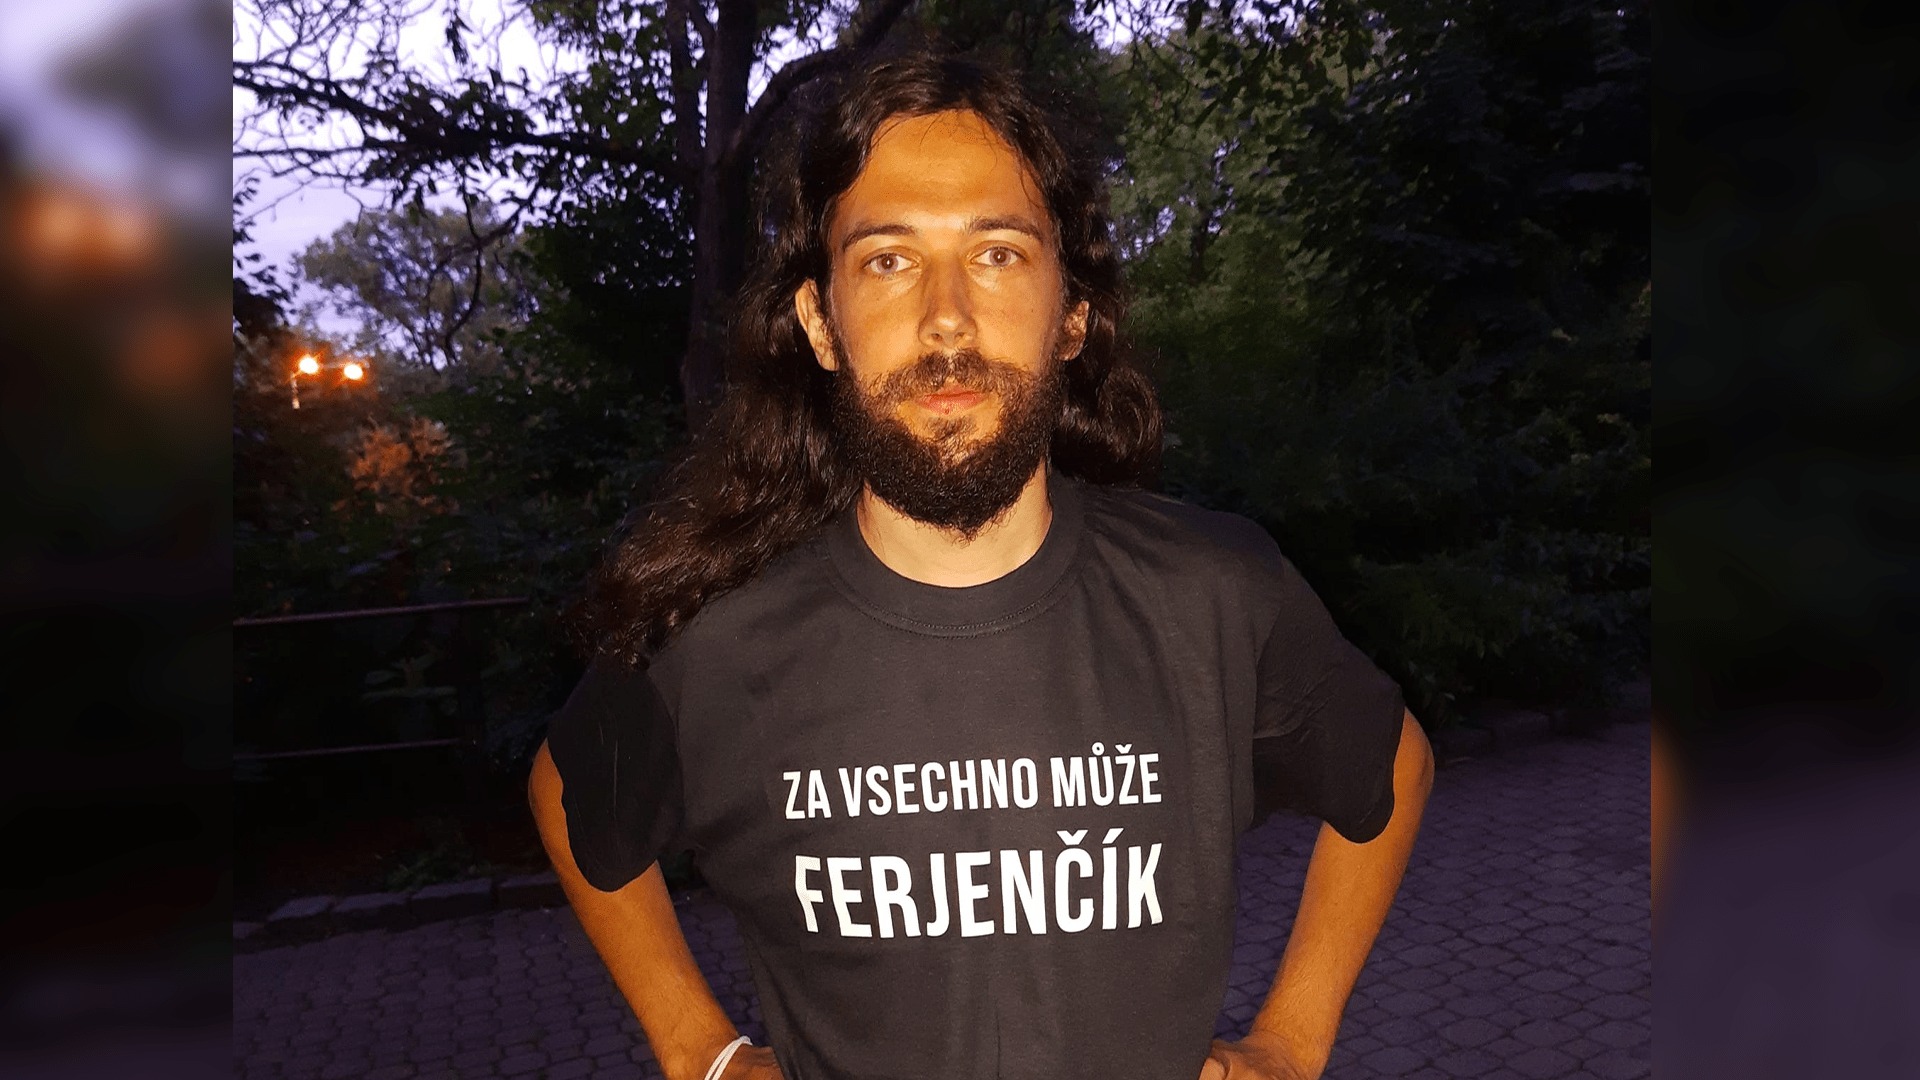 Poslanec Pirátů Mikuláš Ferjenčík si nechal udělat tričko, kterým okopíroval Miroslava Kalouska, expředsedu TOP 09.